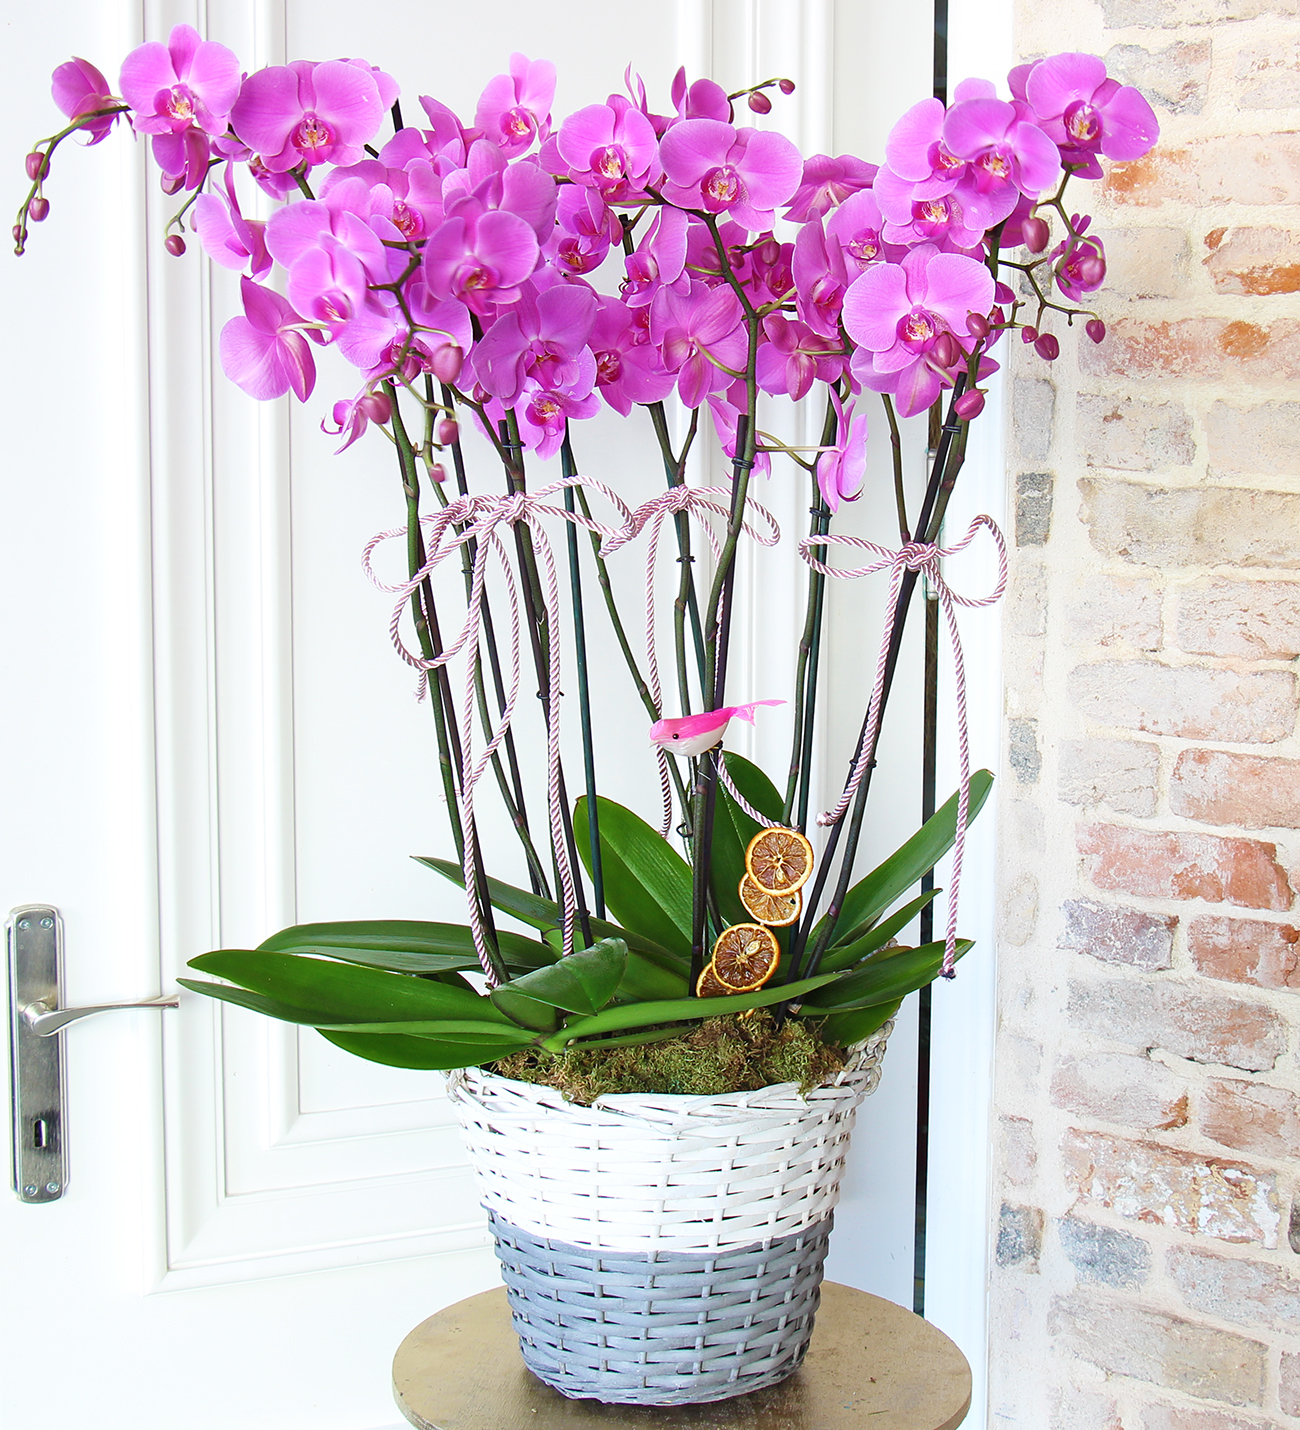 Matila sepette 8 dallı mor orkide tasarımı